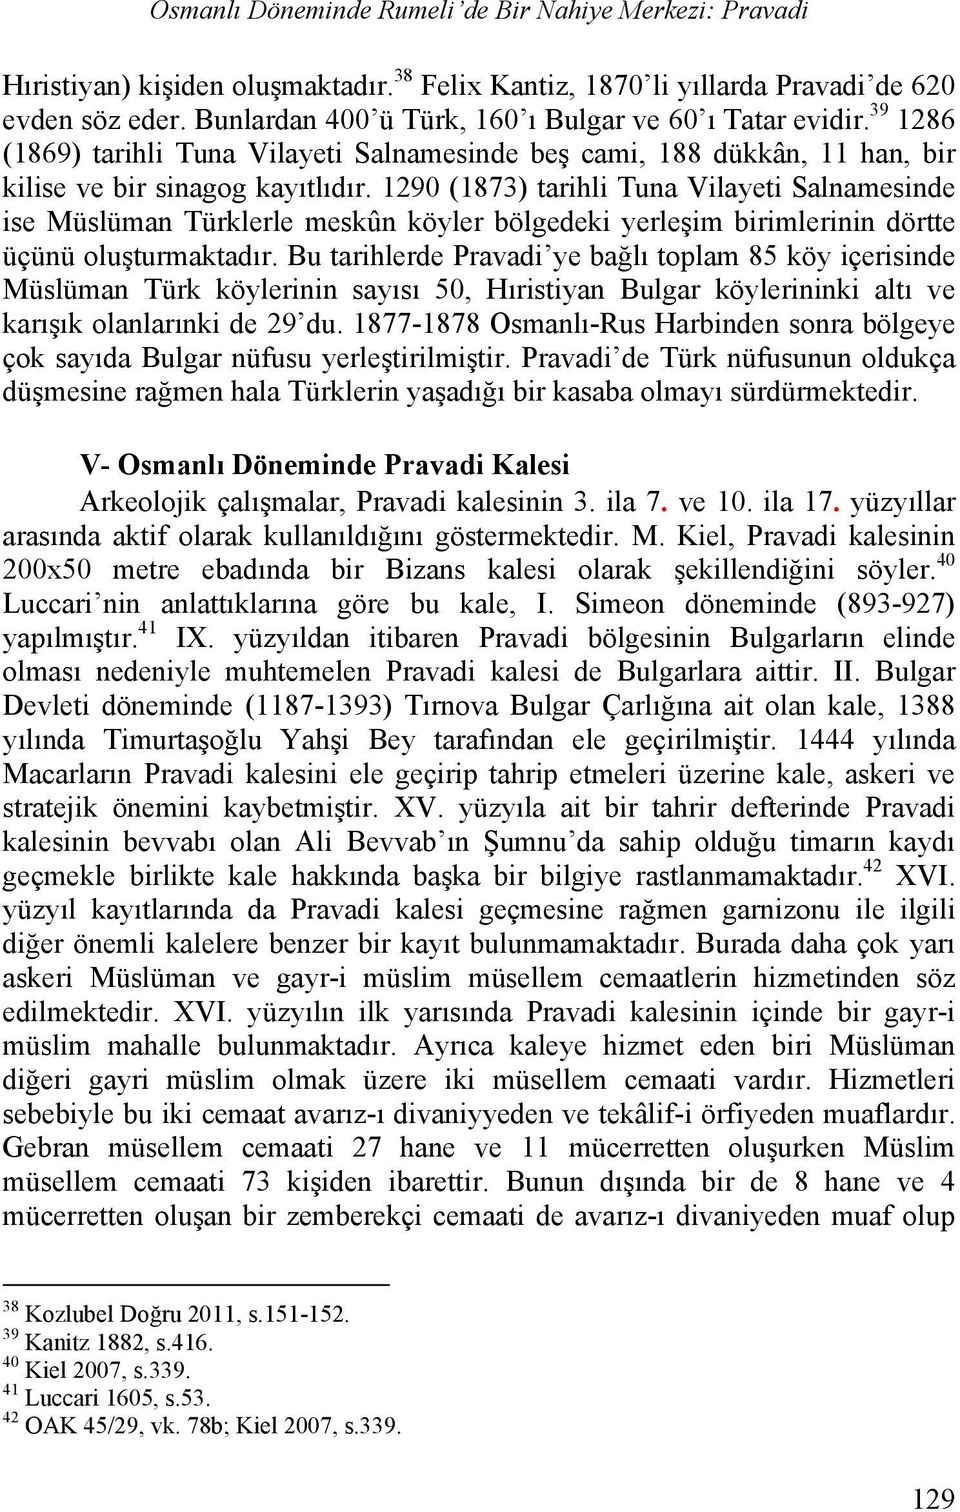 1290 (1873) tarihli Tuna Vilayeti Salnamesinde ise Müslüman Türklerle meskûn köyler bölgedeki yerleşim birimlerinin dörtte üçünü oluşturmaktadır.